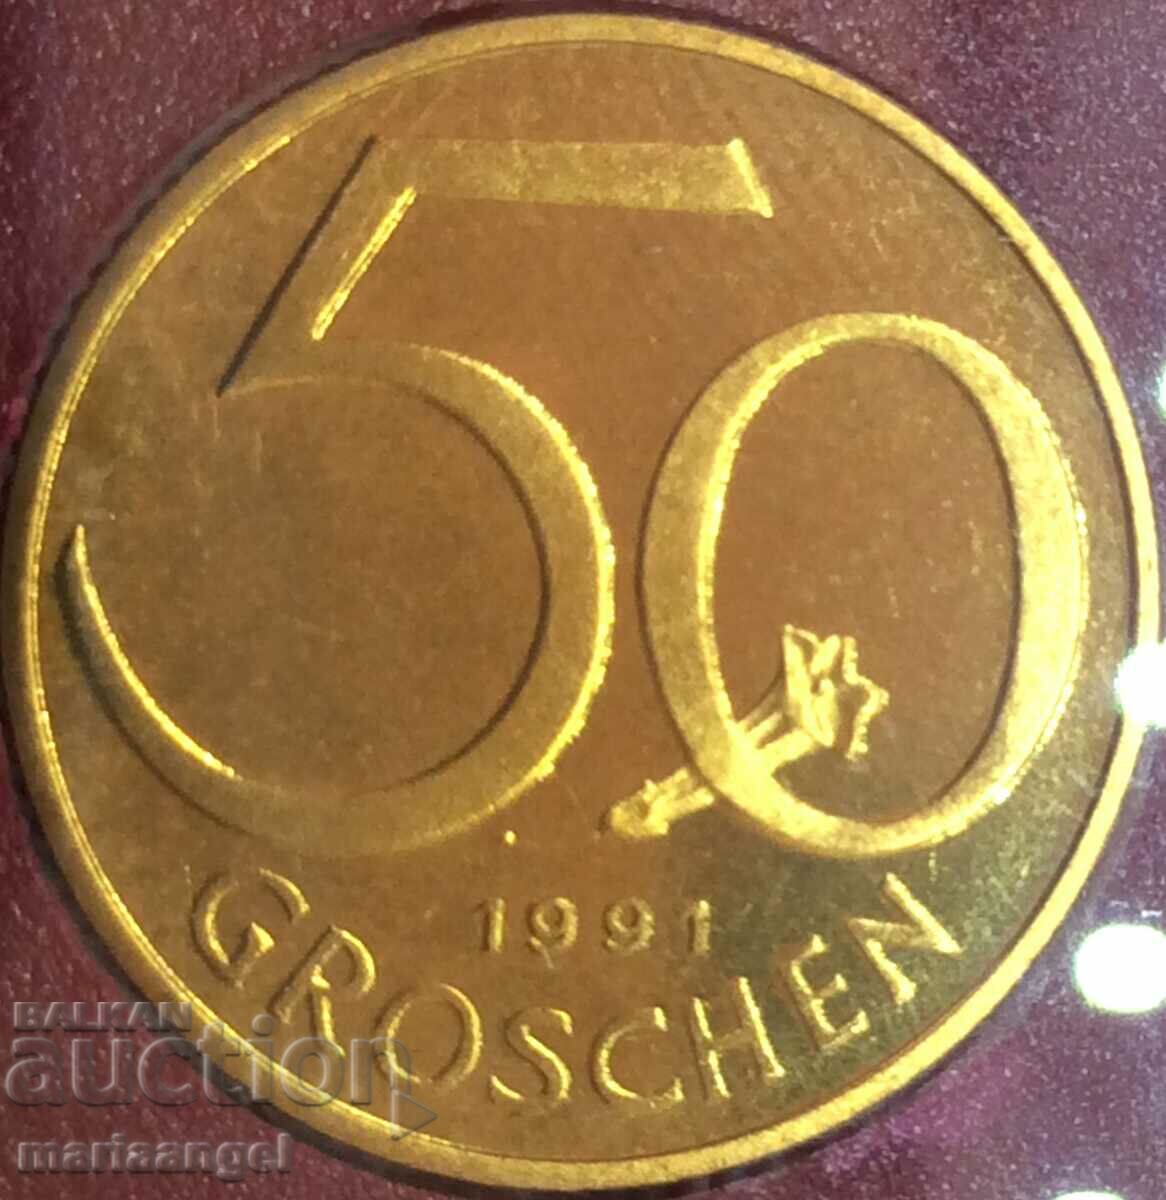 50 Grosz 1991 Αυστρία UNC ΑΠΟΔΕΙΞΗ